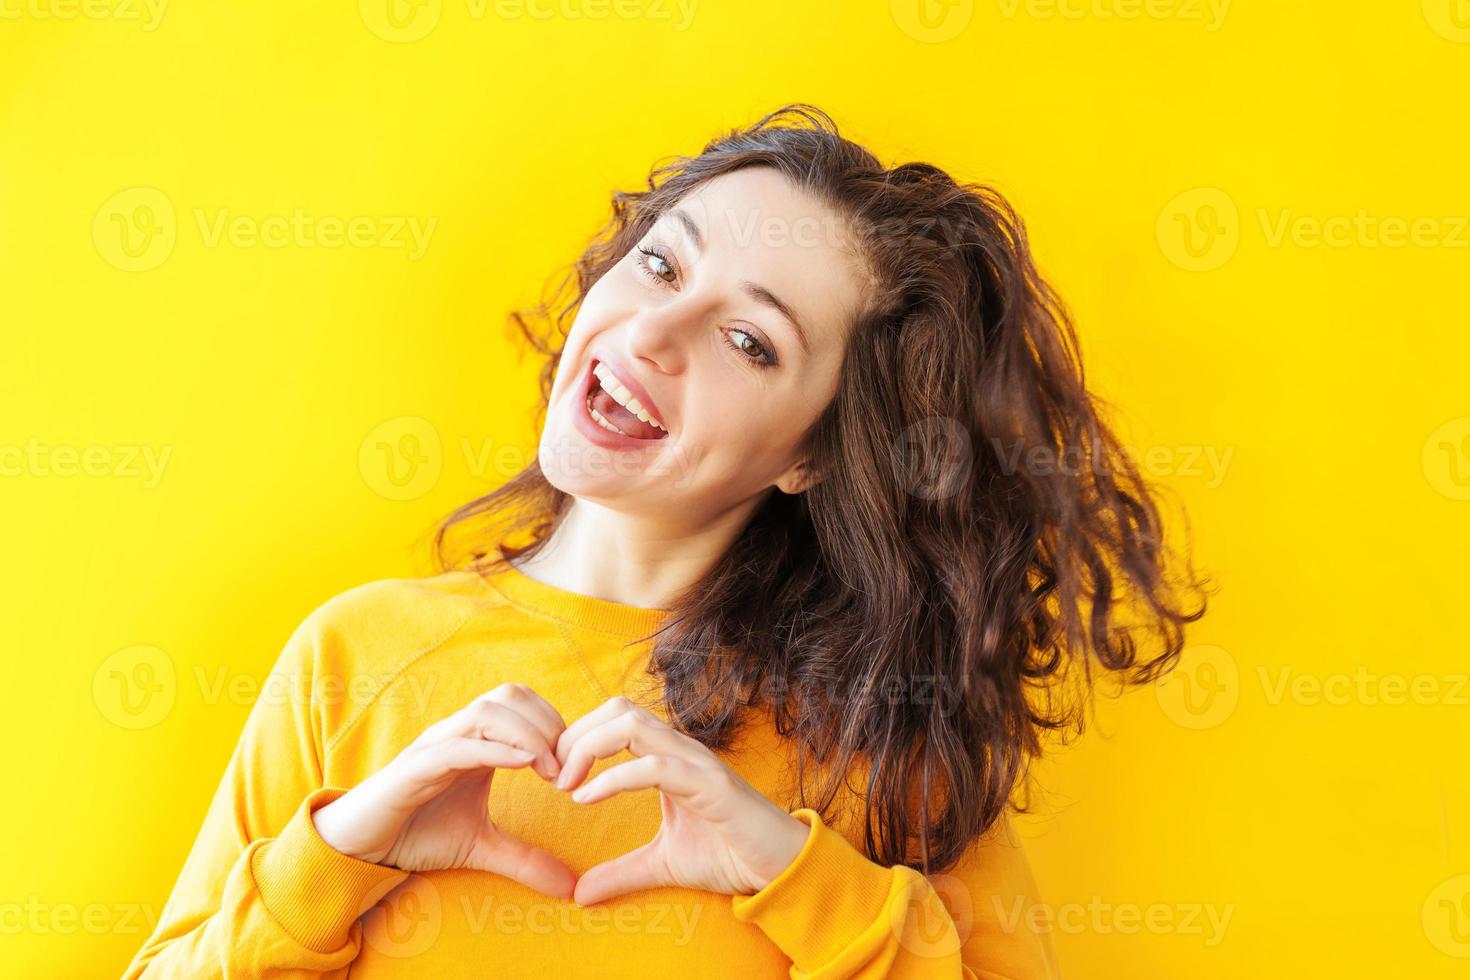 amor, forma de coração, paz. beleza retrato jovem mulher positiva feliz mostrando sinal de coração com as mãos sobre fundo amarelo isolado. garota europeia. linguagem corporal de expressão facial de emoção humana positiva. foto